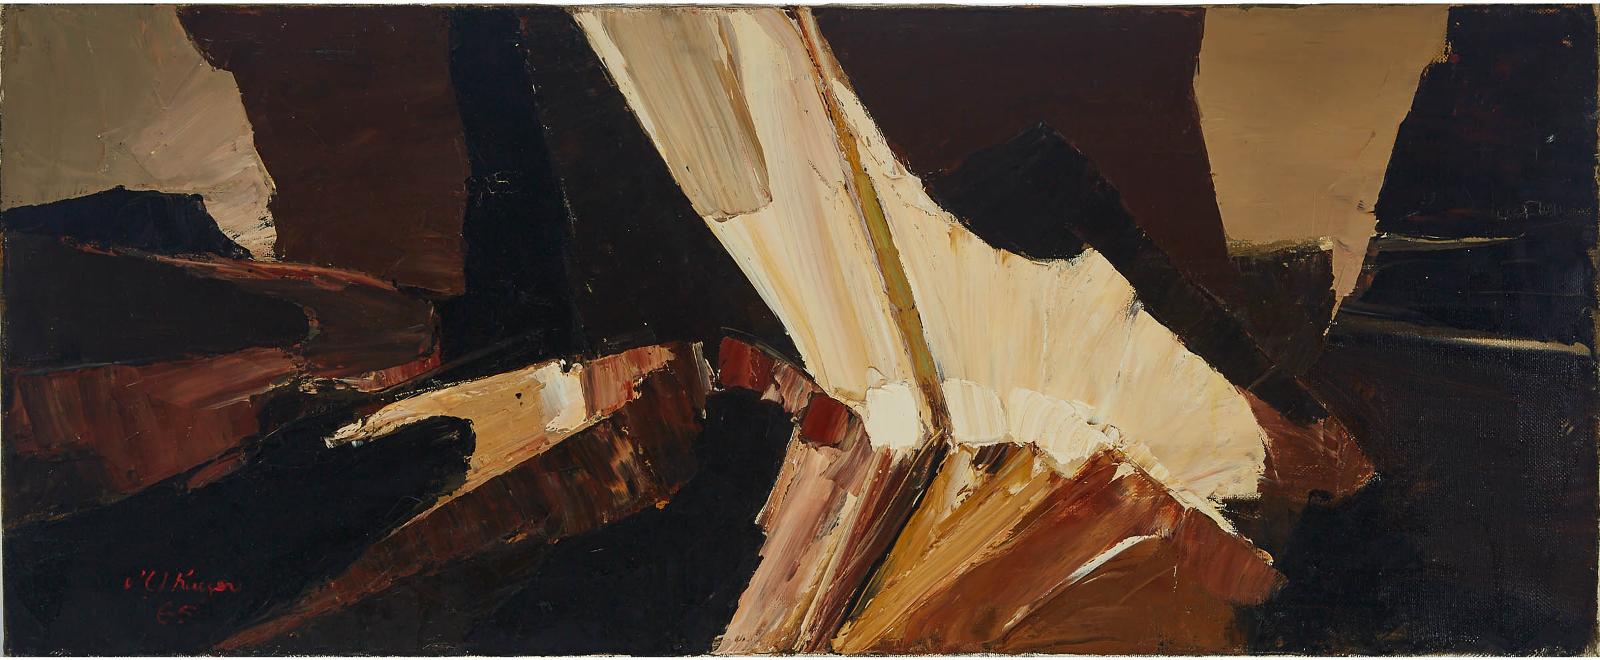 Michael J. Kuczer (1910-1975) - Untitled, 1965